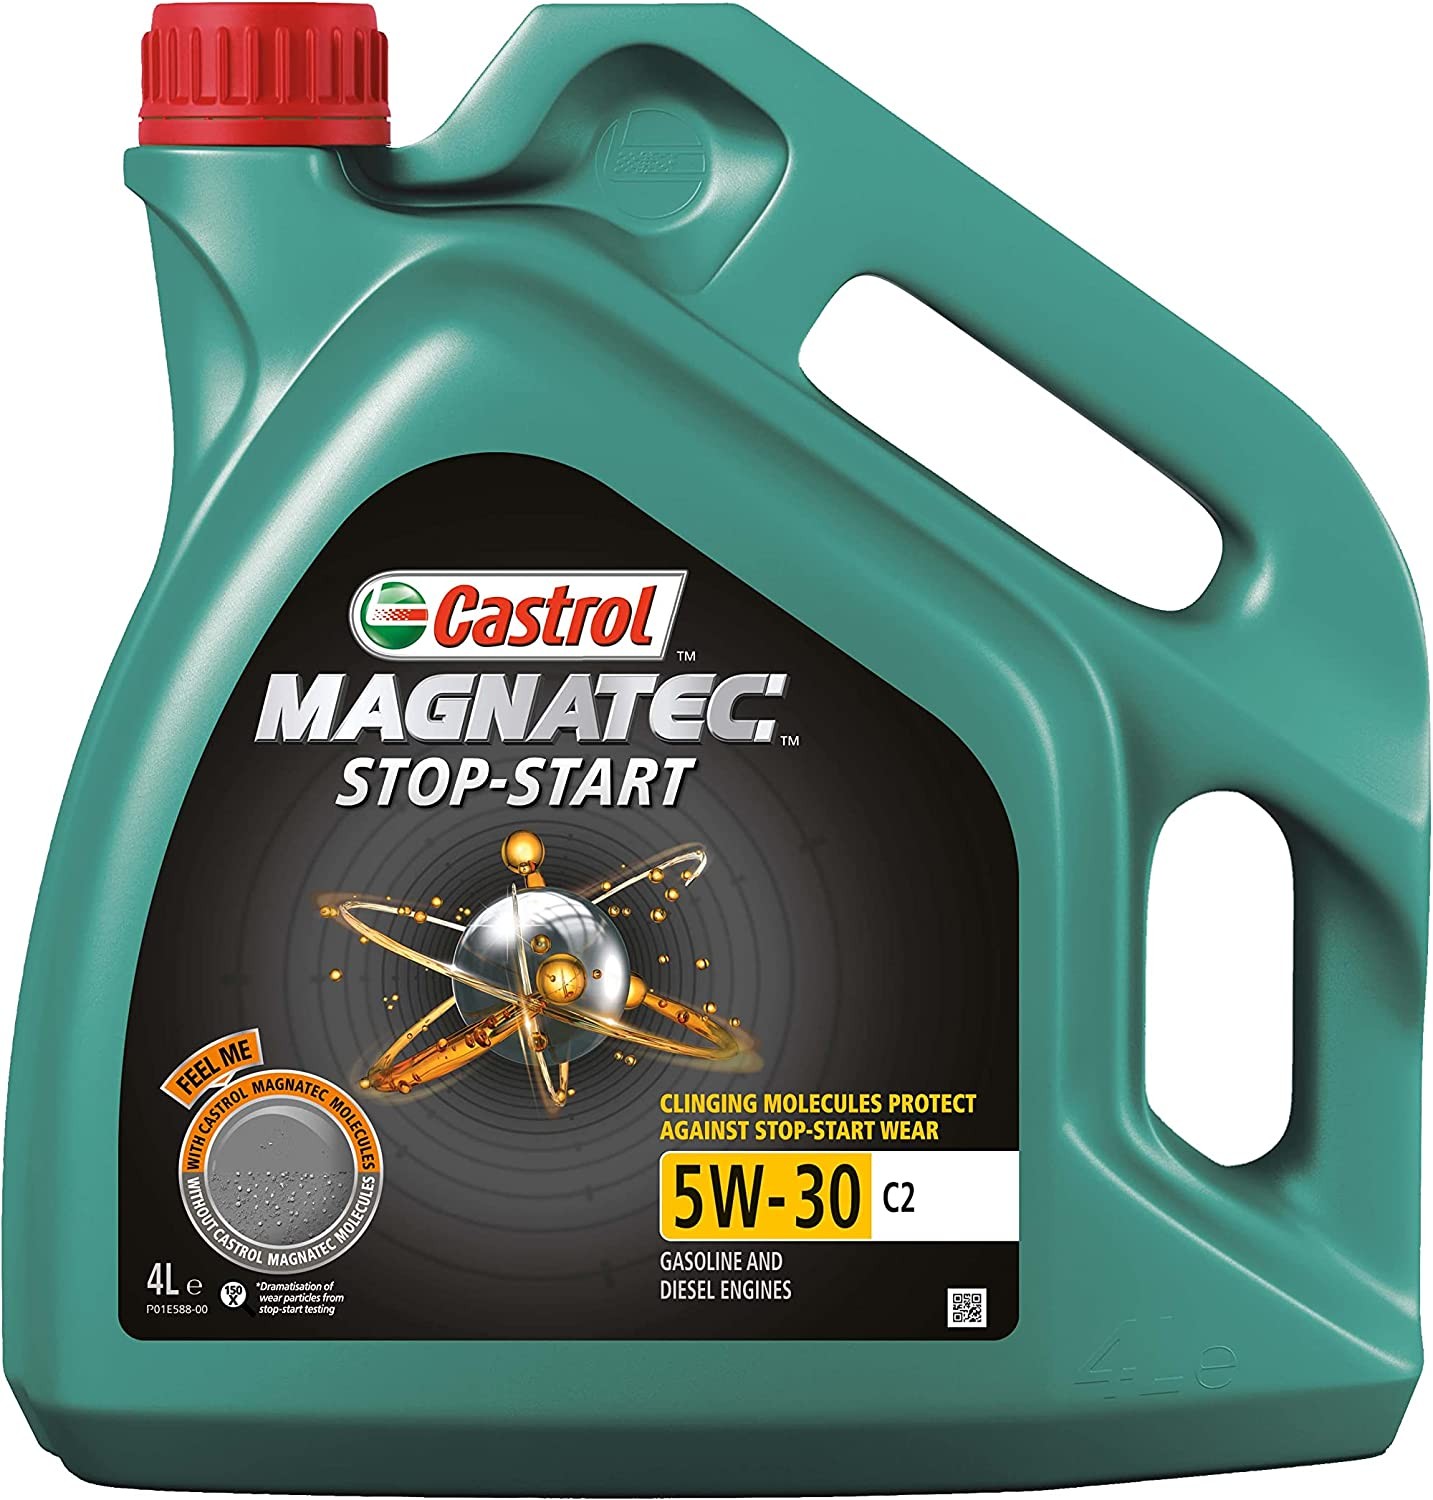 Aceite Castrol Magnatec Stop-Start 5W30 C2 4L - Precio: 37,32 € - Megataller